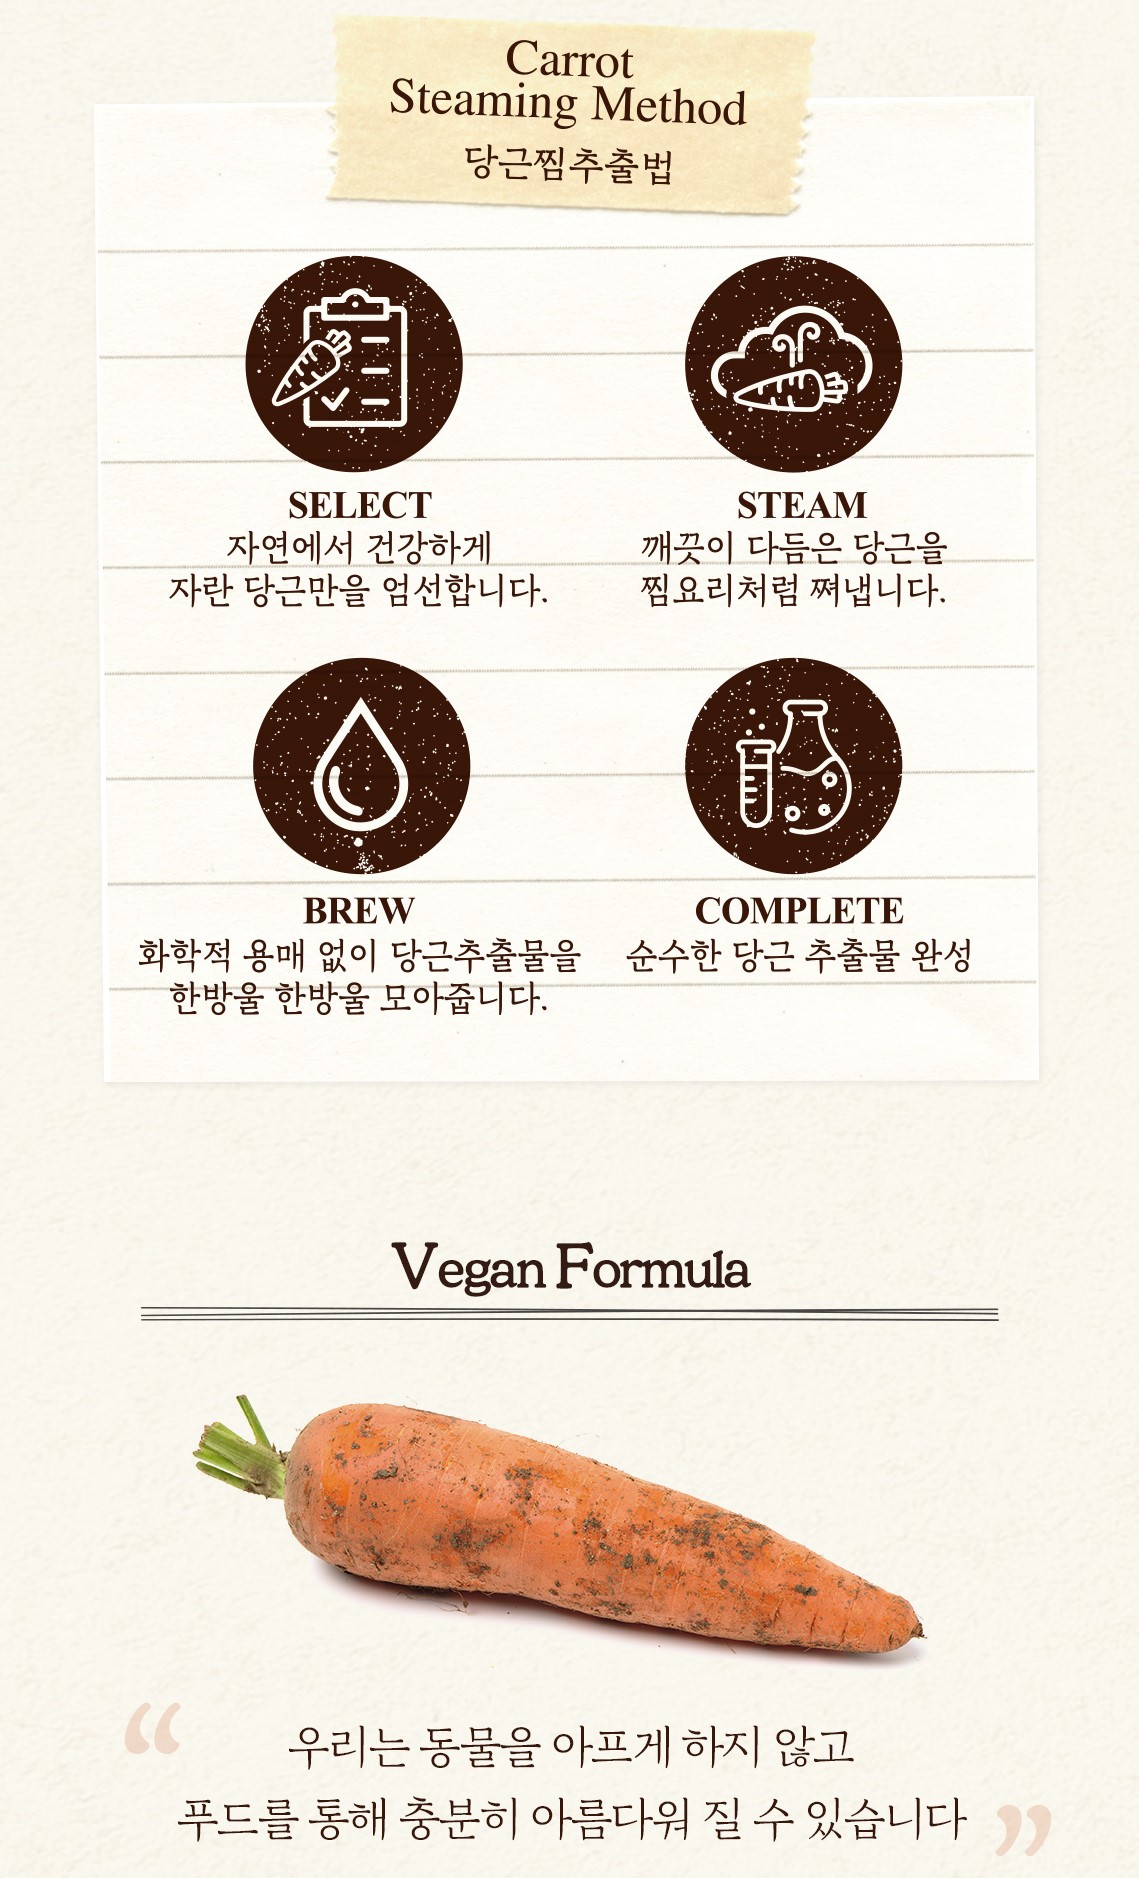 韓國食品-[스킨푸드] 캐롯 카로틴 카밍 워터 패드 (당근패드) 250g (60매)